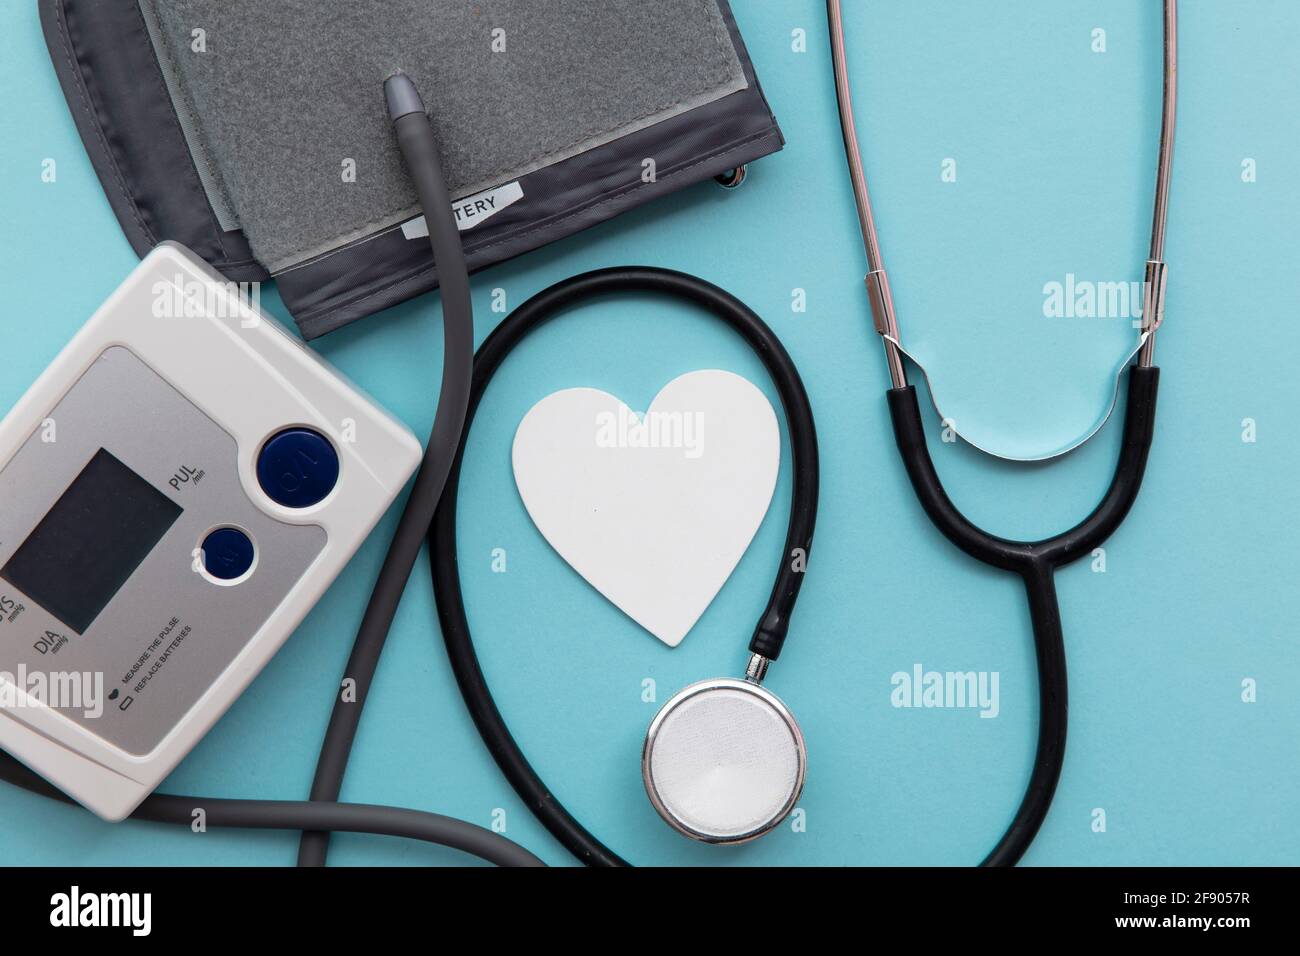 Blutdruckmessgerät mit Stethoskop auf blauem Display Hintergrund Stockfoto